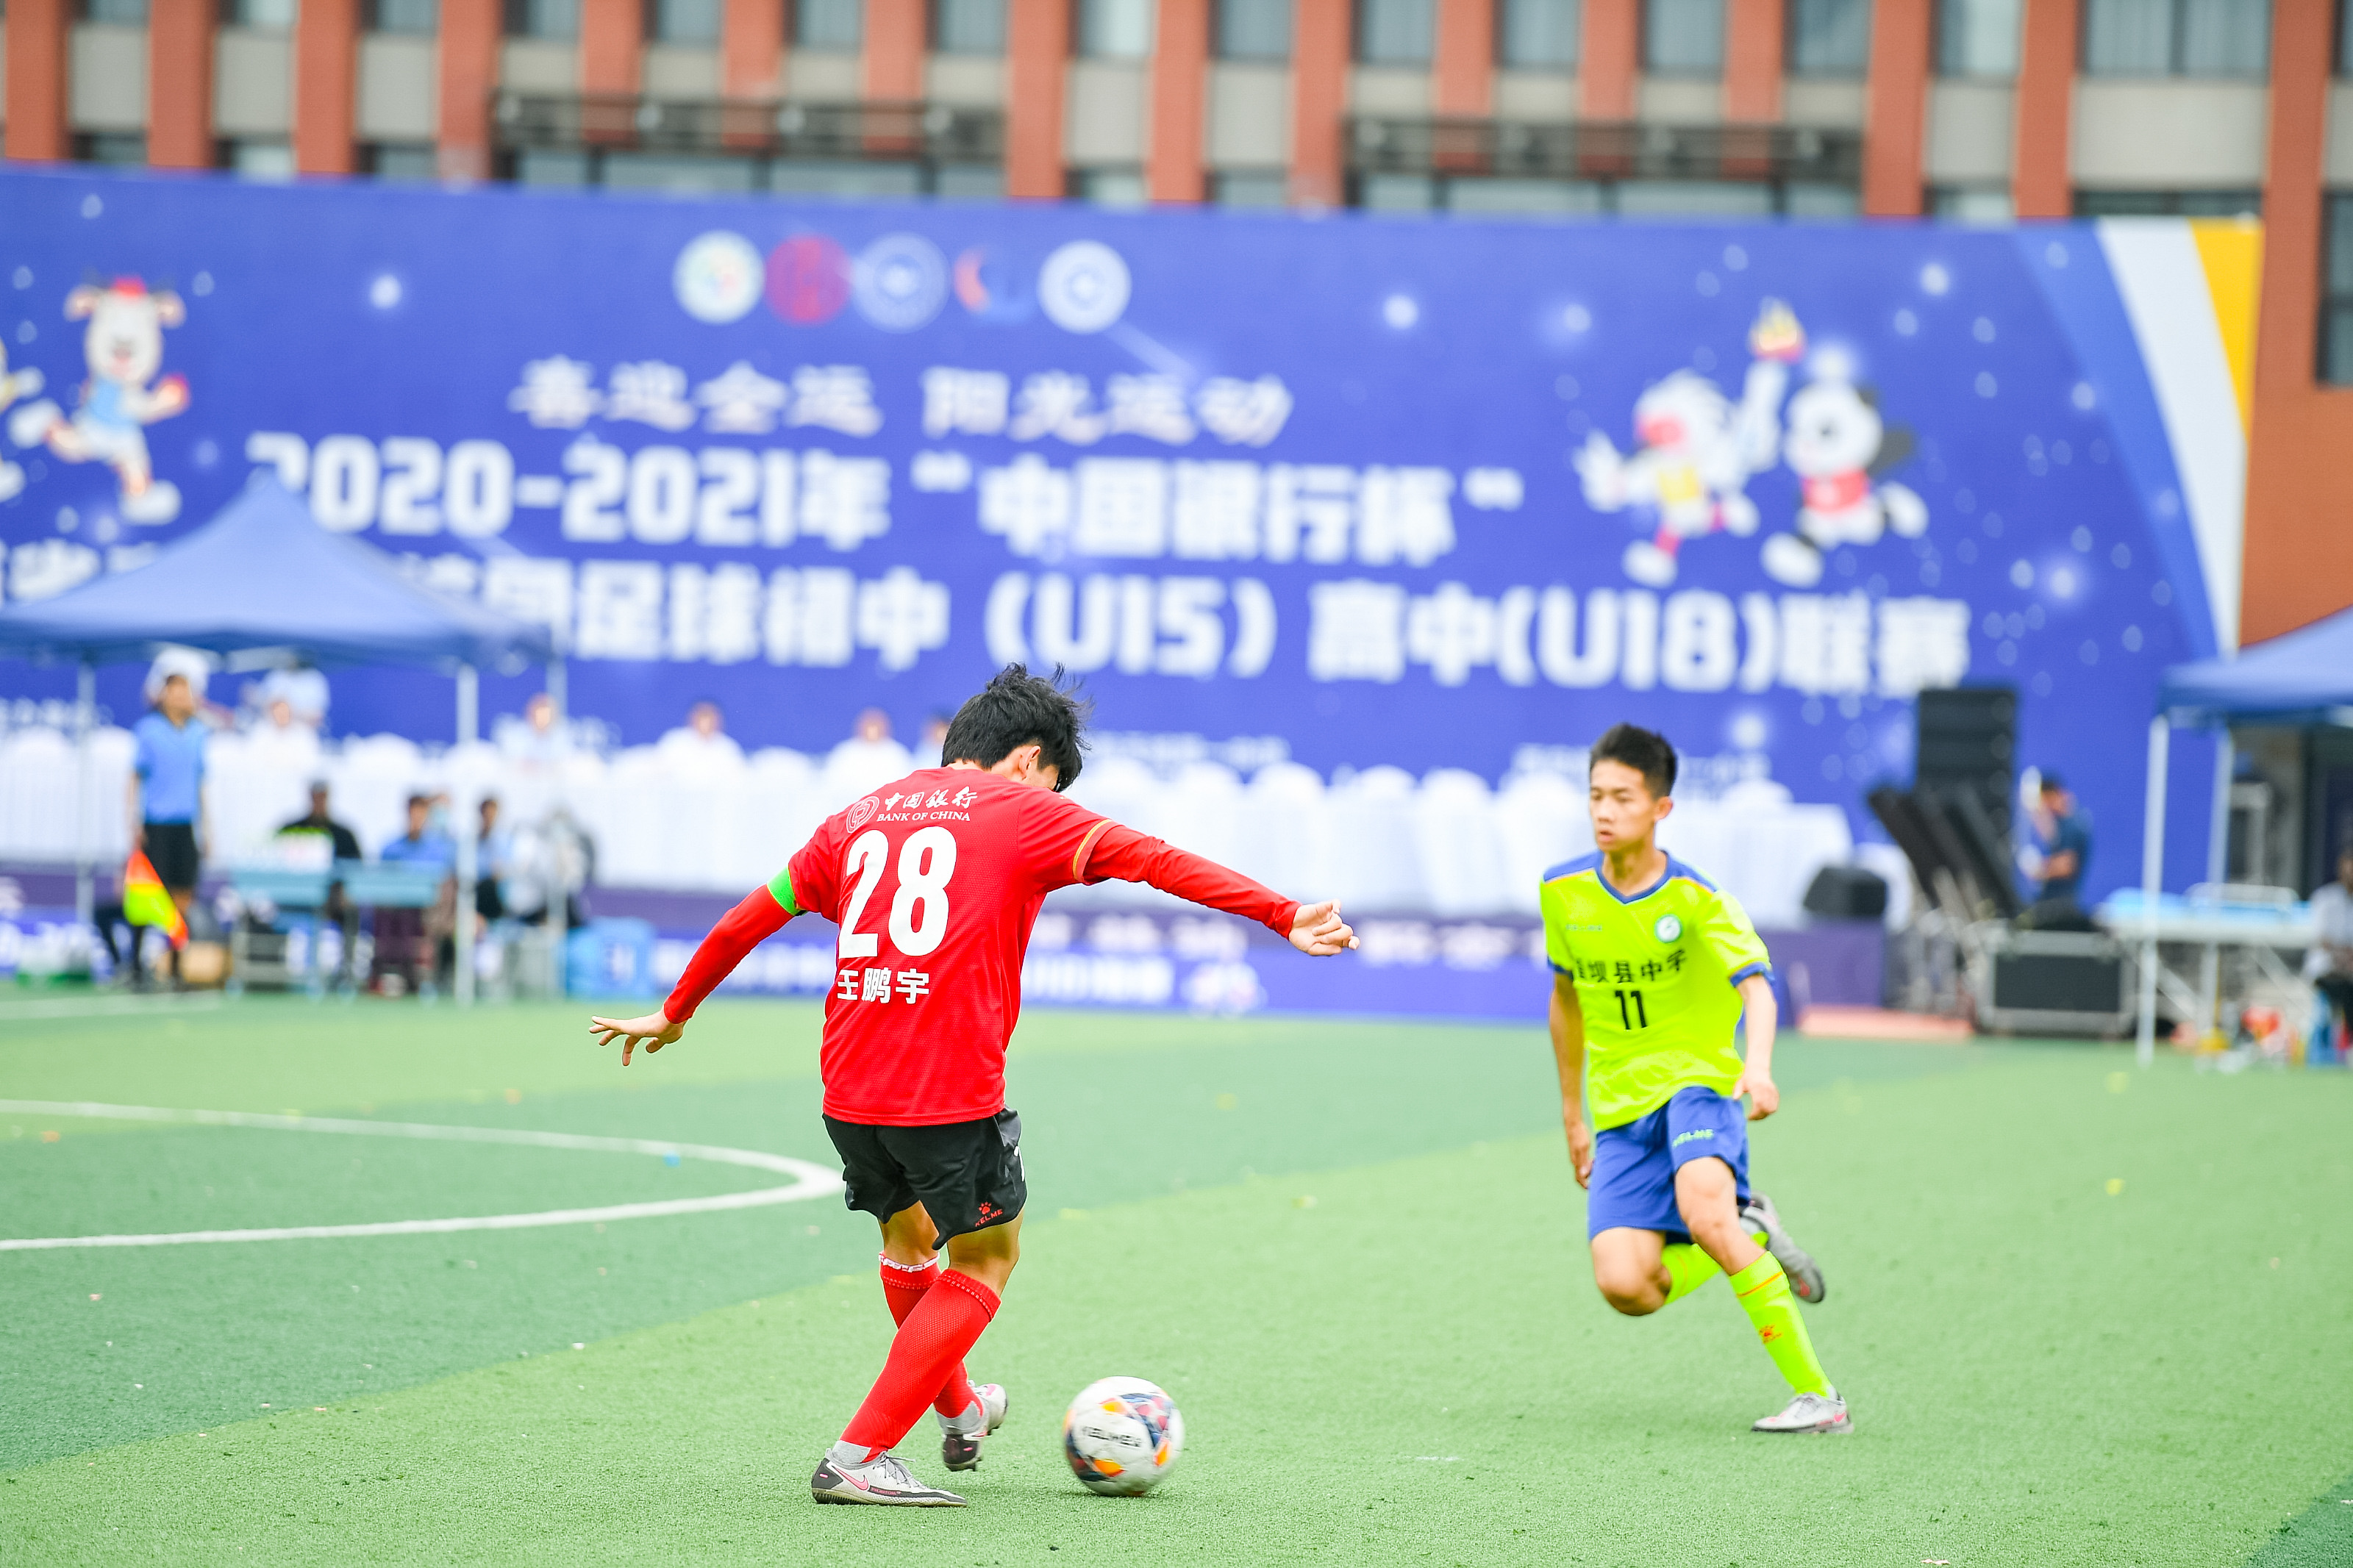 中国青少年足球联赛赛事组织工作方案(2022-2024年))